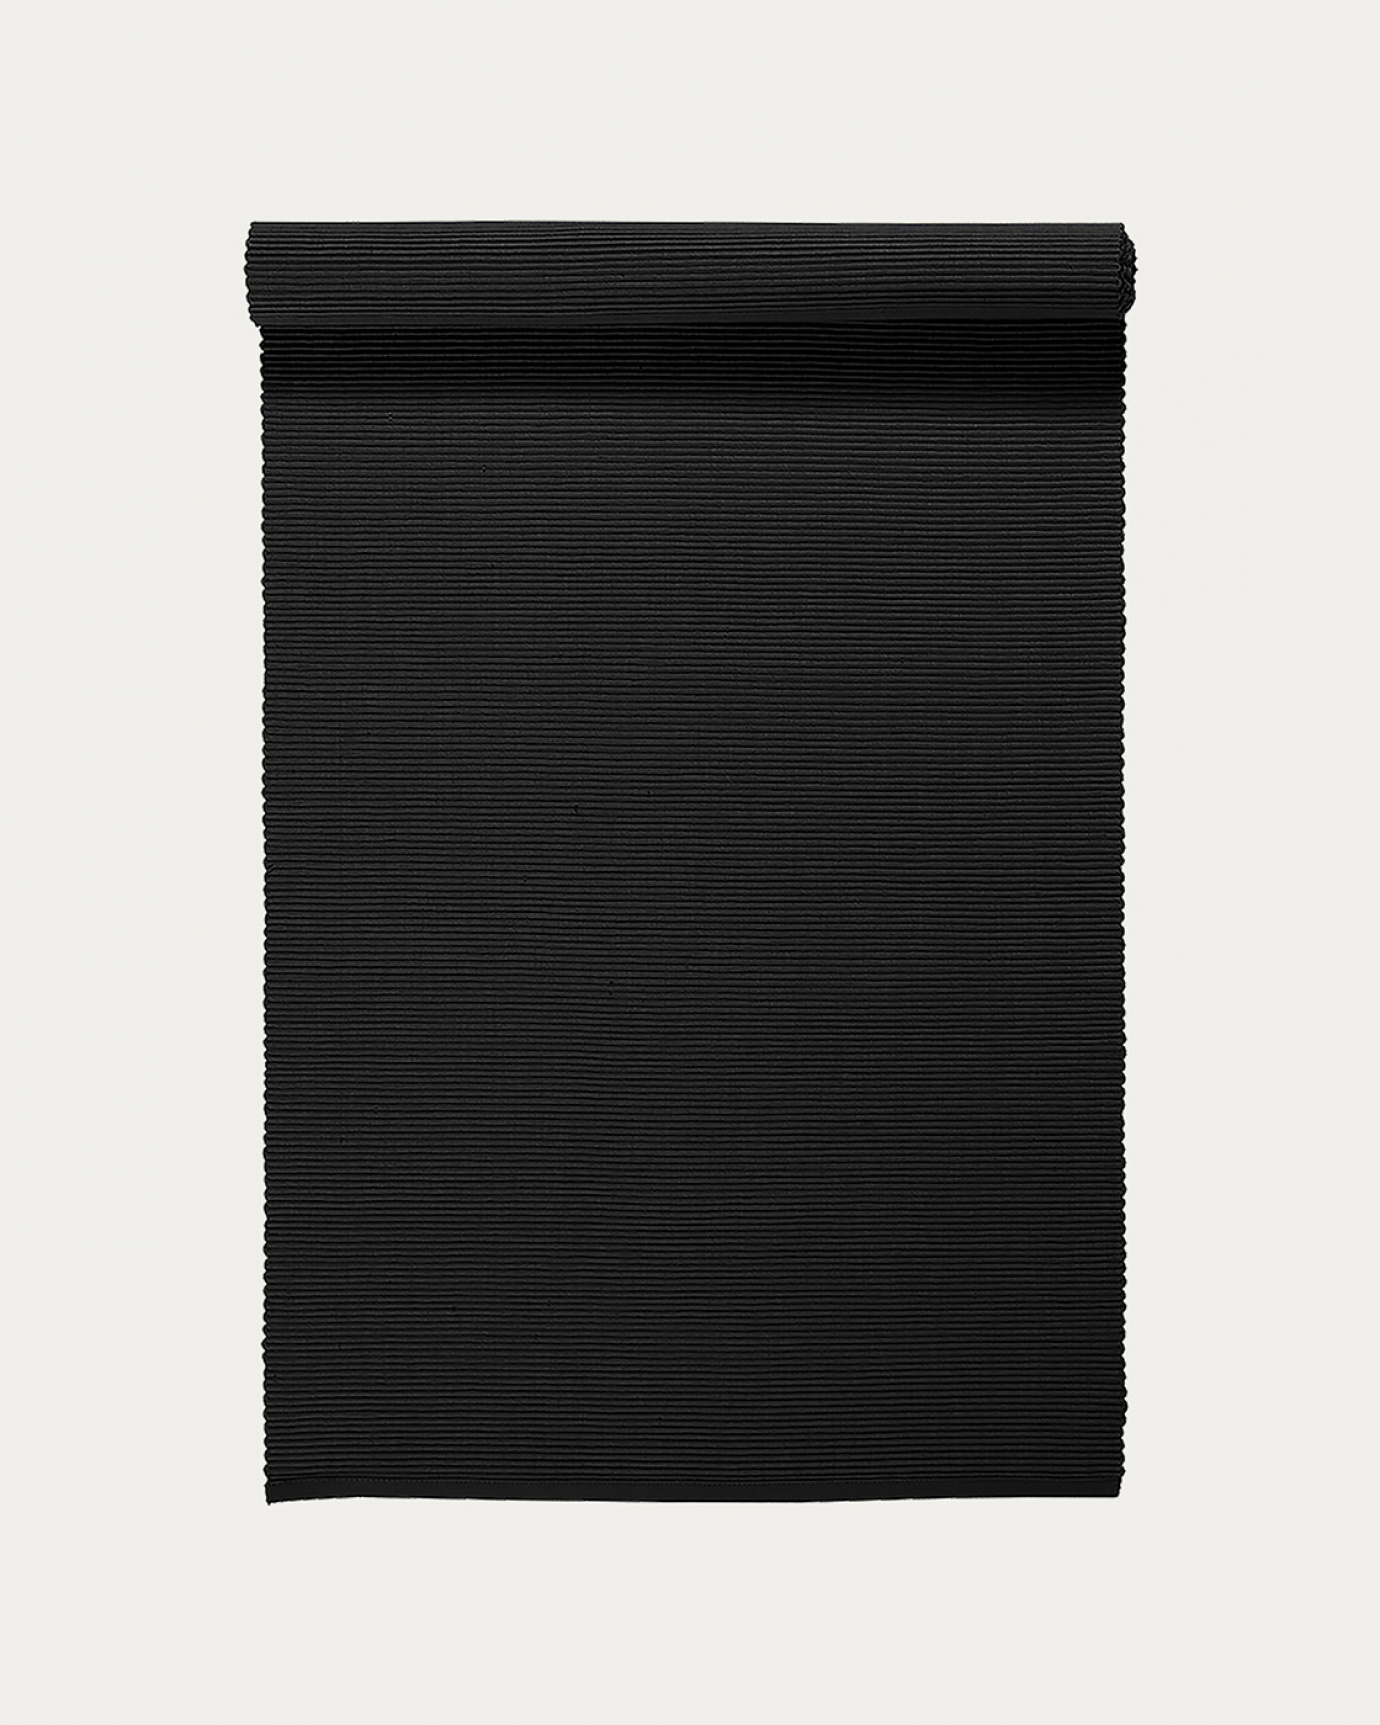 Image du produit chemin de table UNI noir en coton doux de qualité côtelée de LINUM DESIGN. Taille 45 x 150 cm.